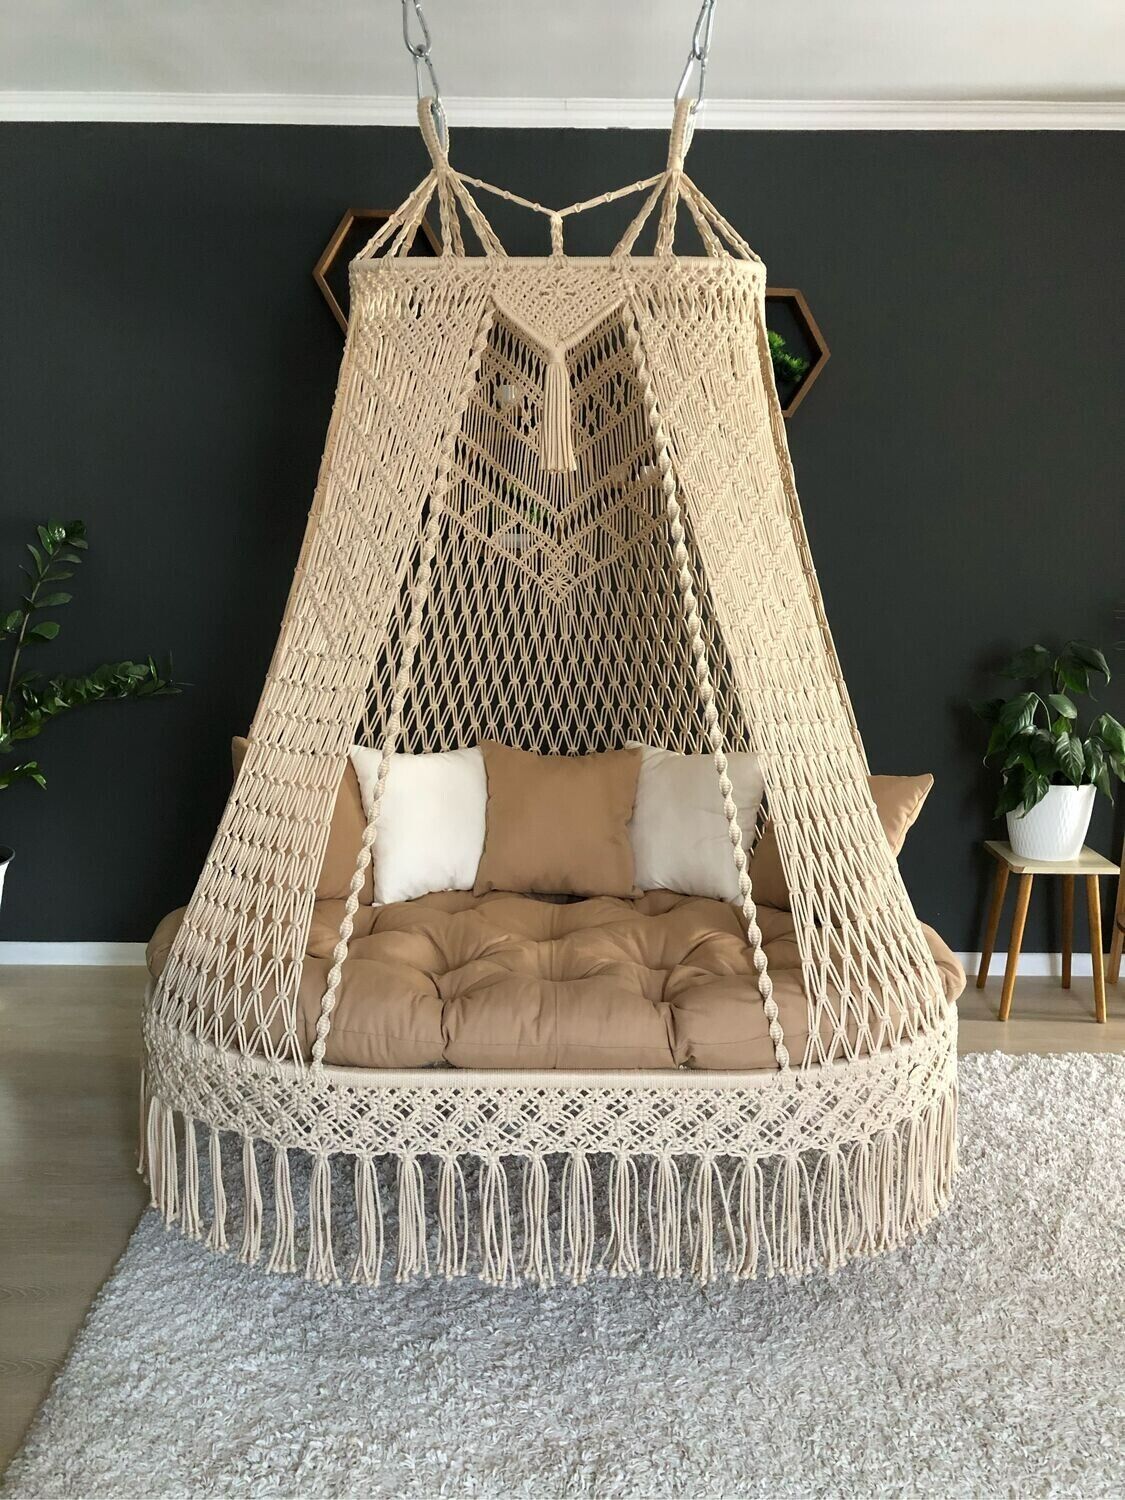 Beautiful Macrame swing chair, hanging chair indoor chair hanging indoor hammock